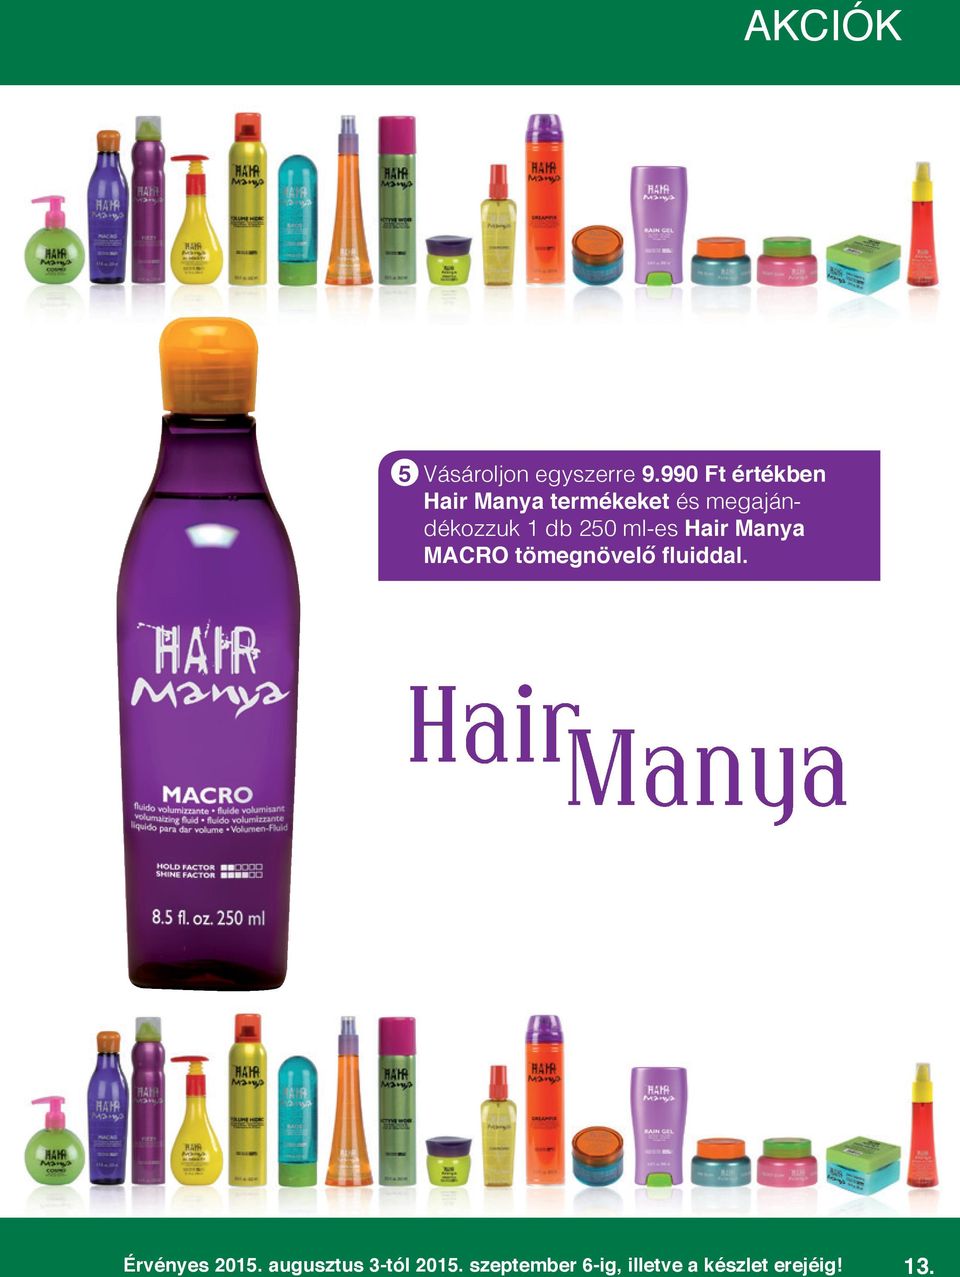 1 db 250 ml-es Hair Manya MACRO tömegnövelő fluiddal.